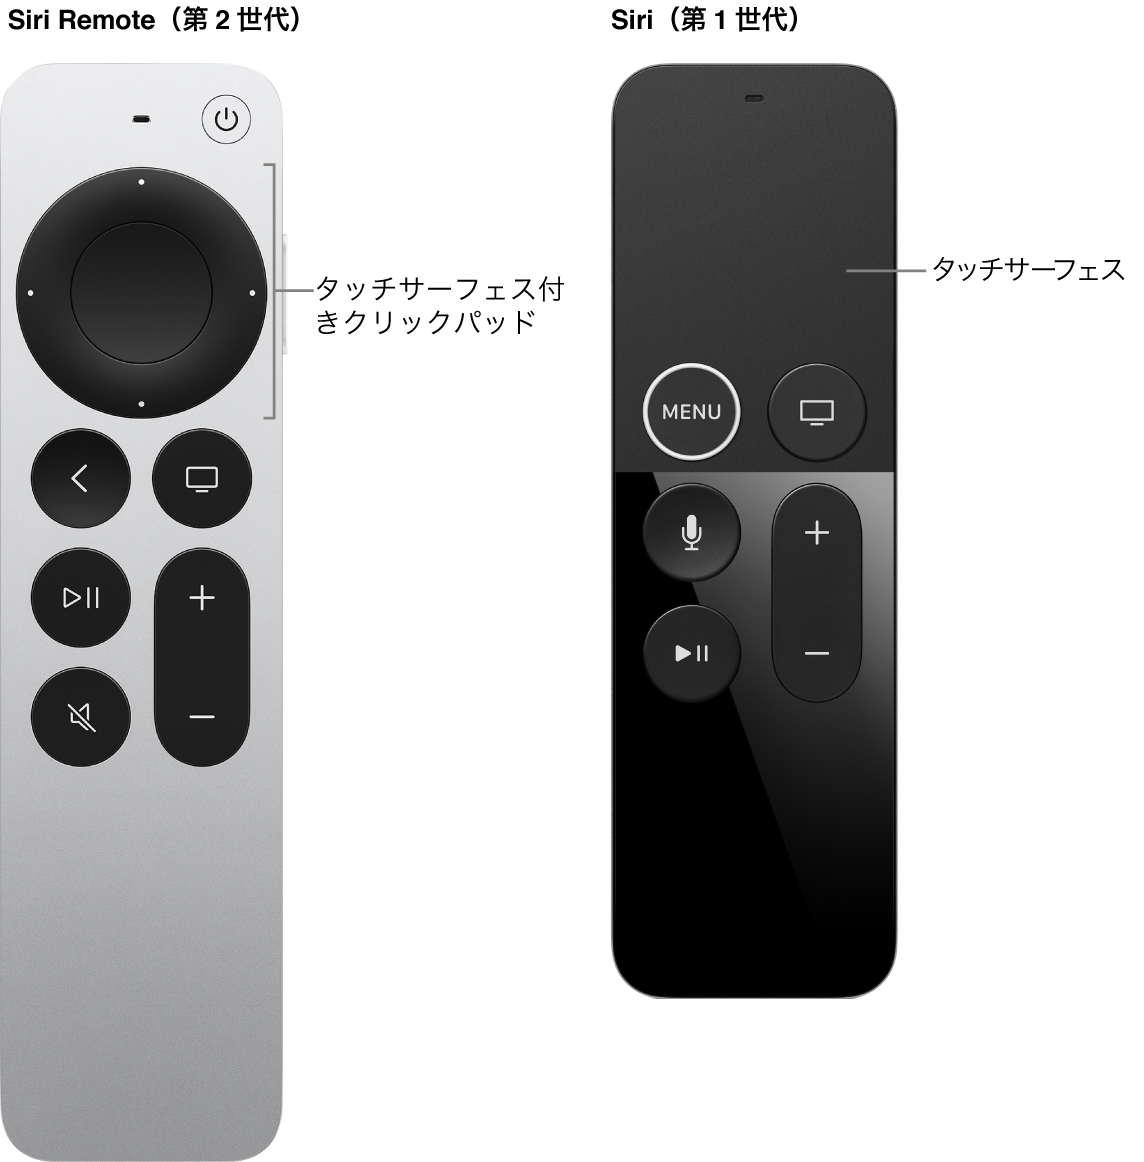 クリックパッドのあるSiri Remote（第2世代）とTouchサーフェスのあるSiri Remote（第1世代）